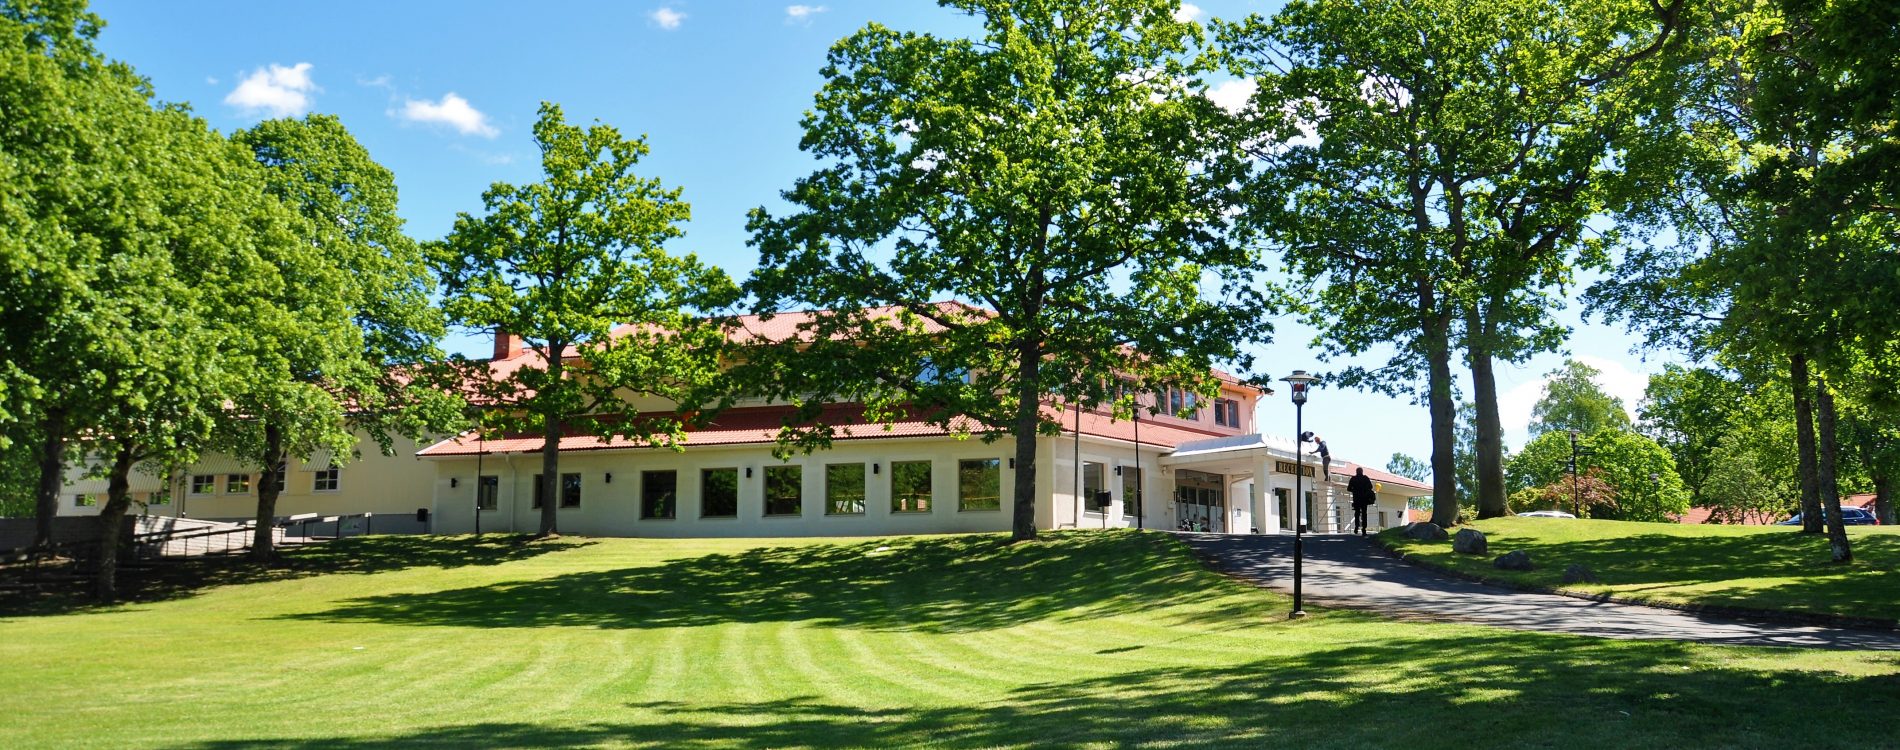 Nya Lundsbrunn Spa och Resort